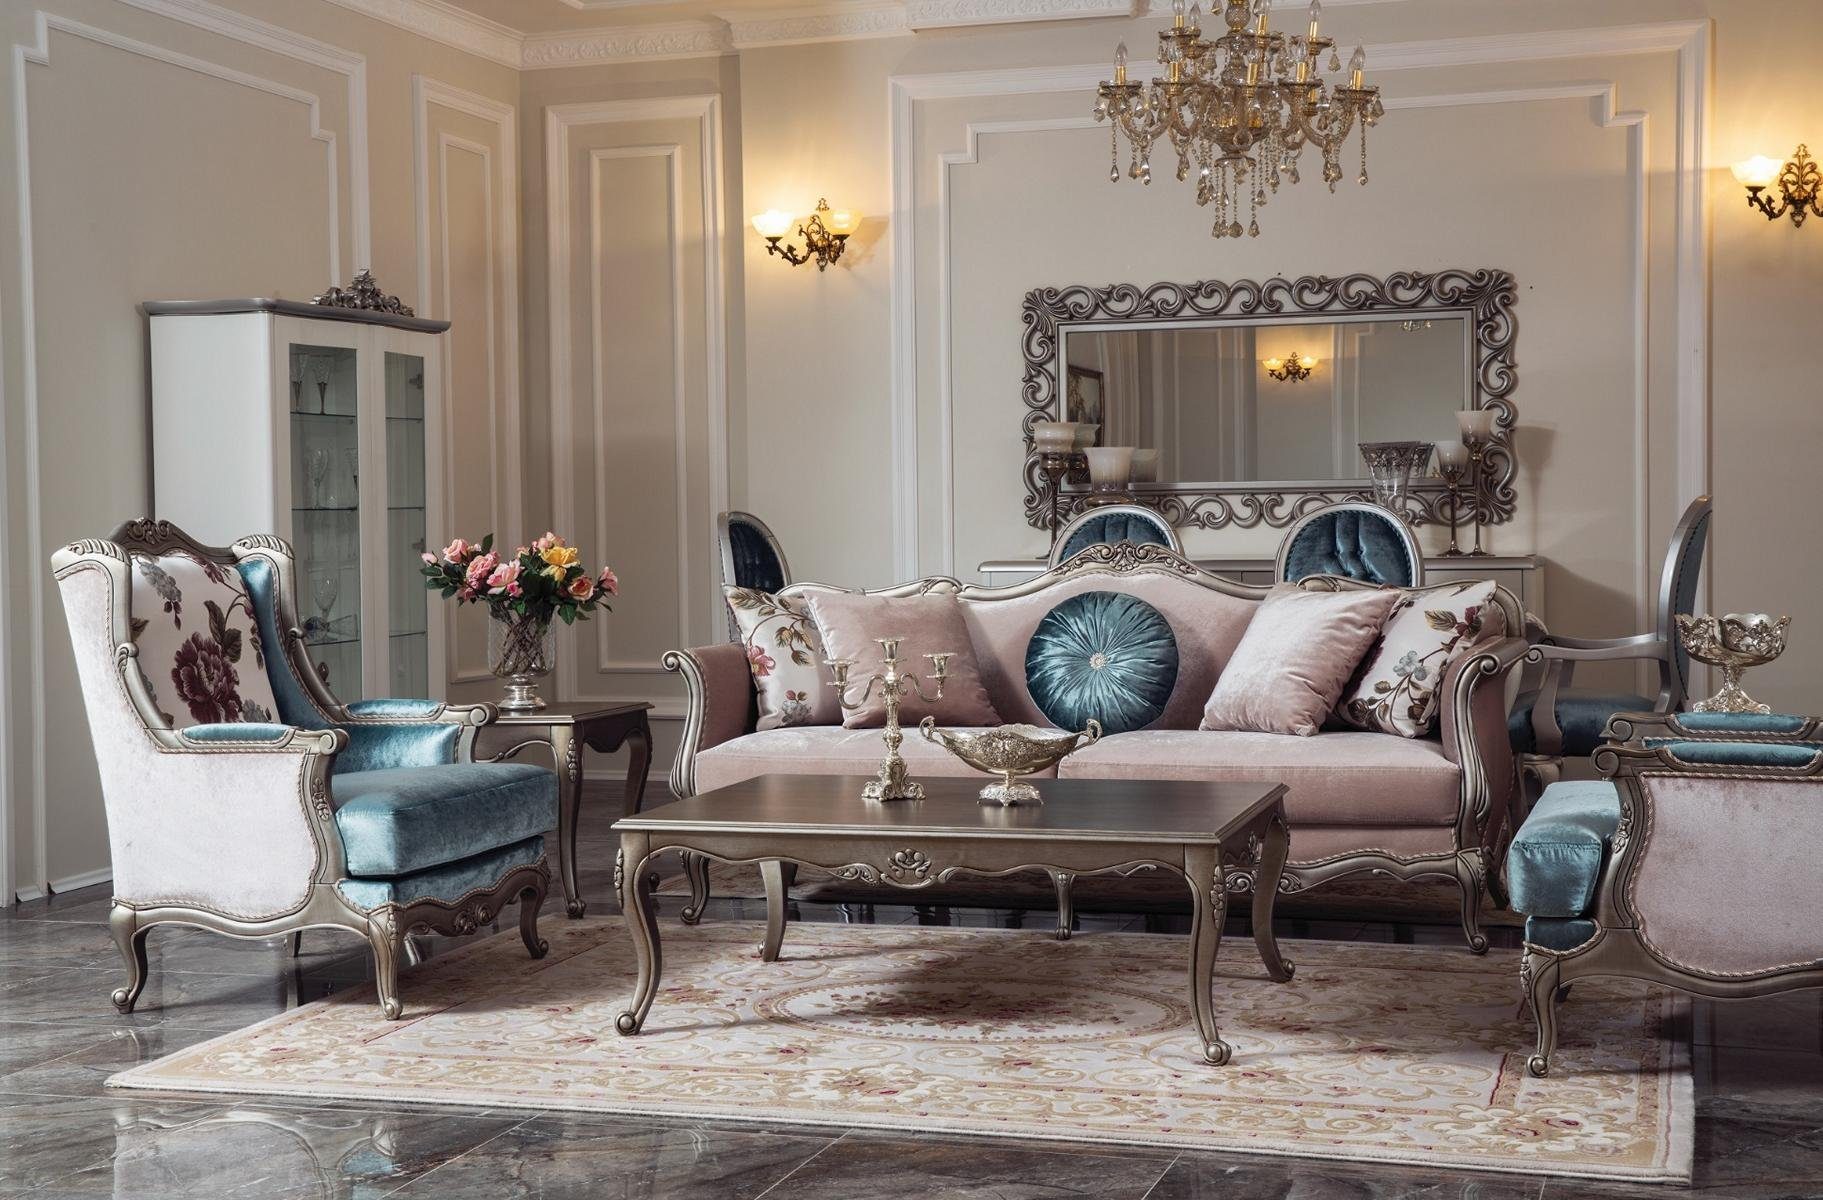 Beliebte Produkte sind JVmoebel Wohnzimmer-Set, Sofagarnitur Luxus Sofa Couchtisch 3+1+1 Sitzer Sessel Sofas